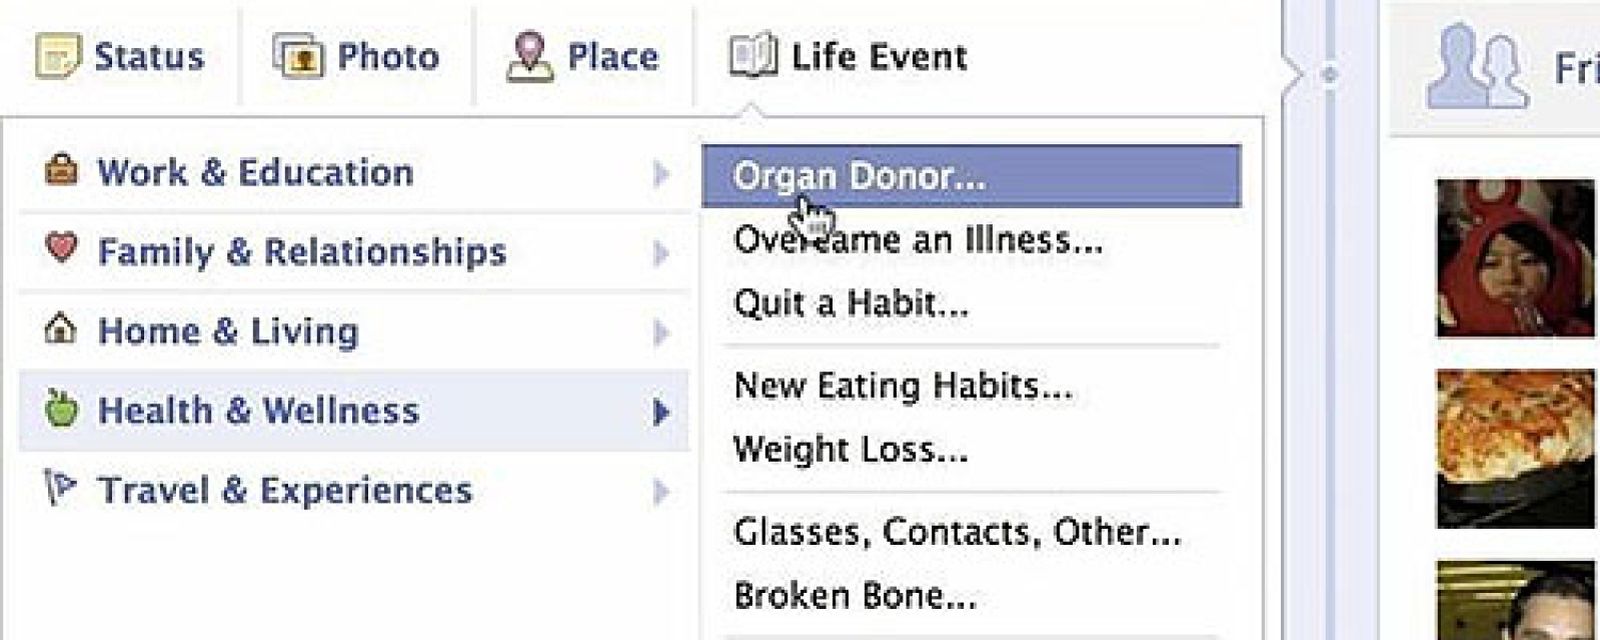 Foto: Facebook crea una herramienta para encontrar donantes de órganos que arrasa en la red